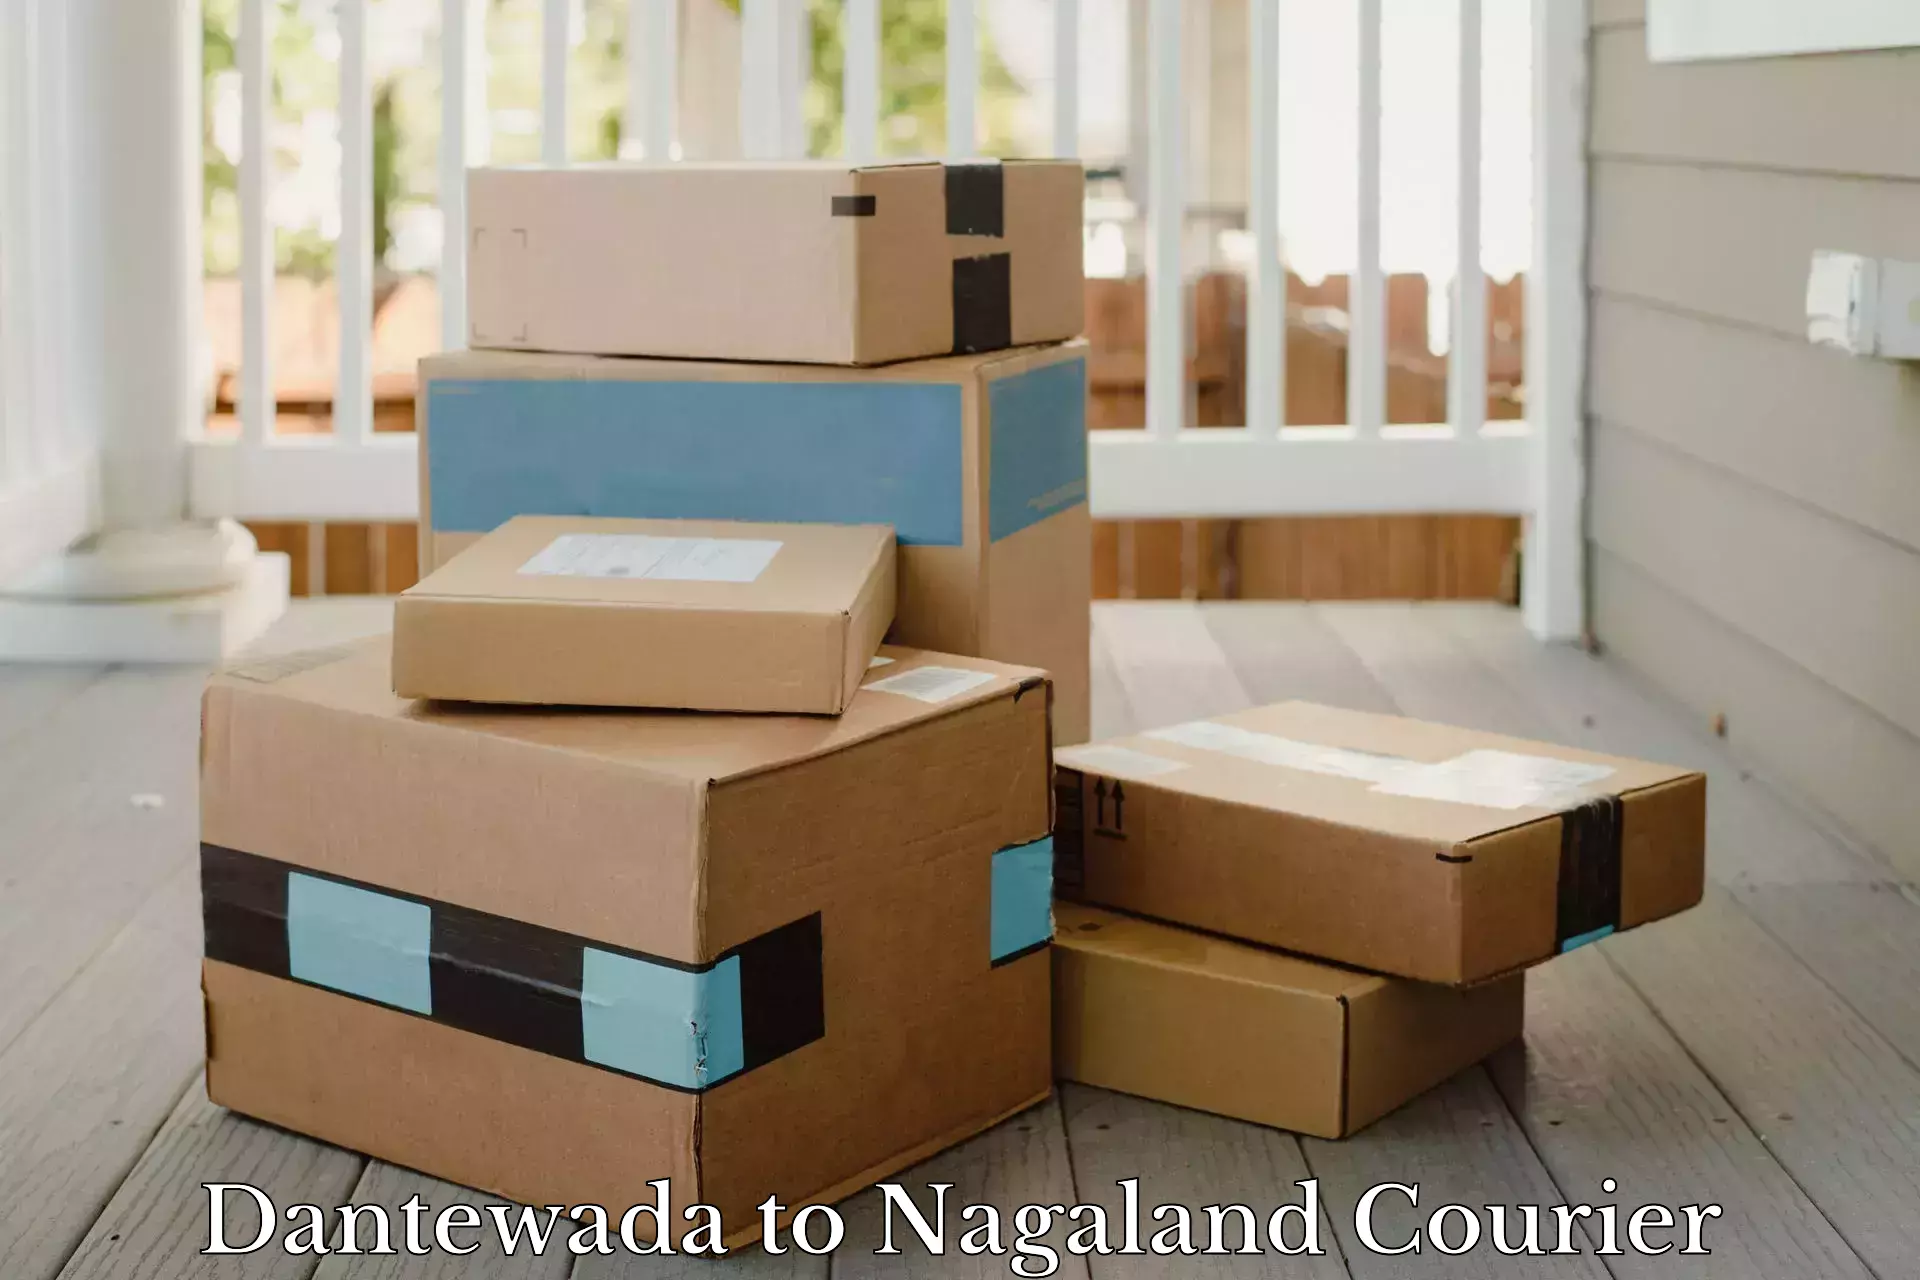 Smart courier technologies Dantewada to Nagaland